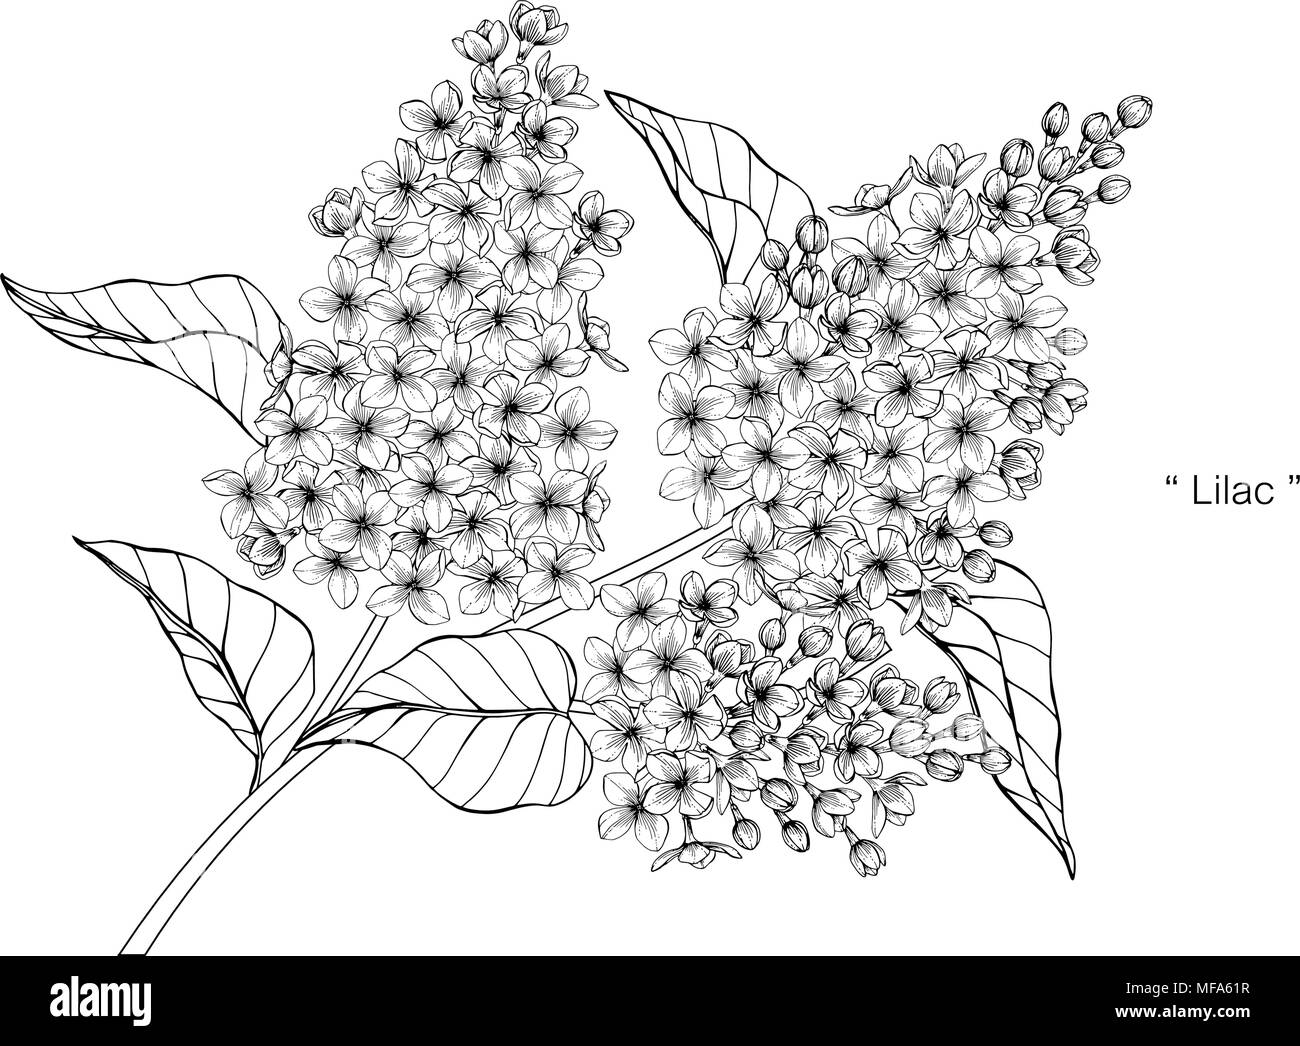 Lilac flower illustration hi